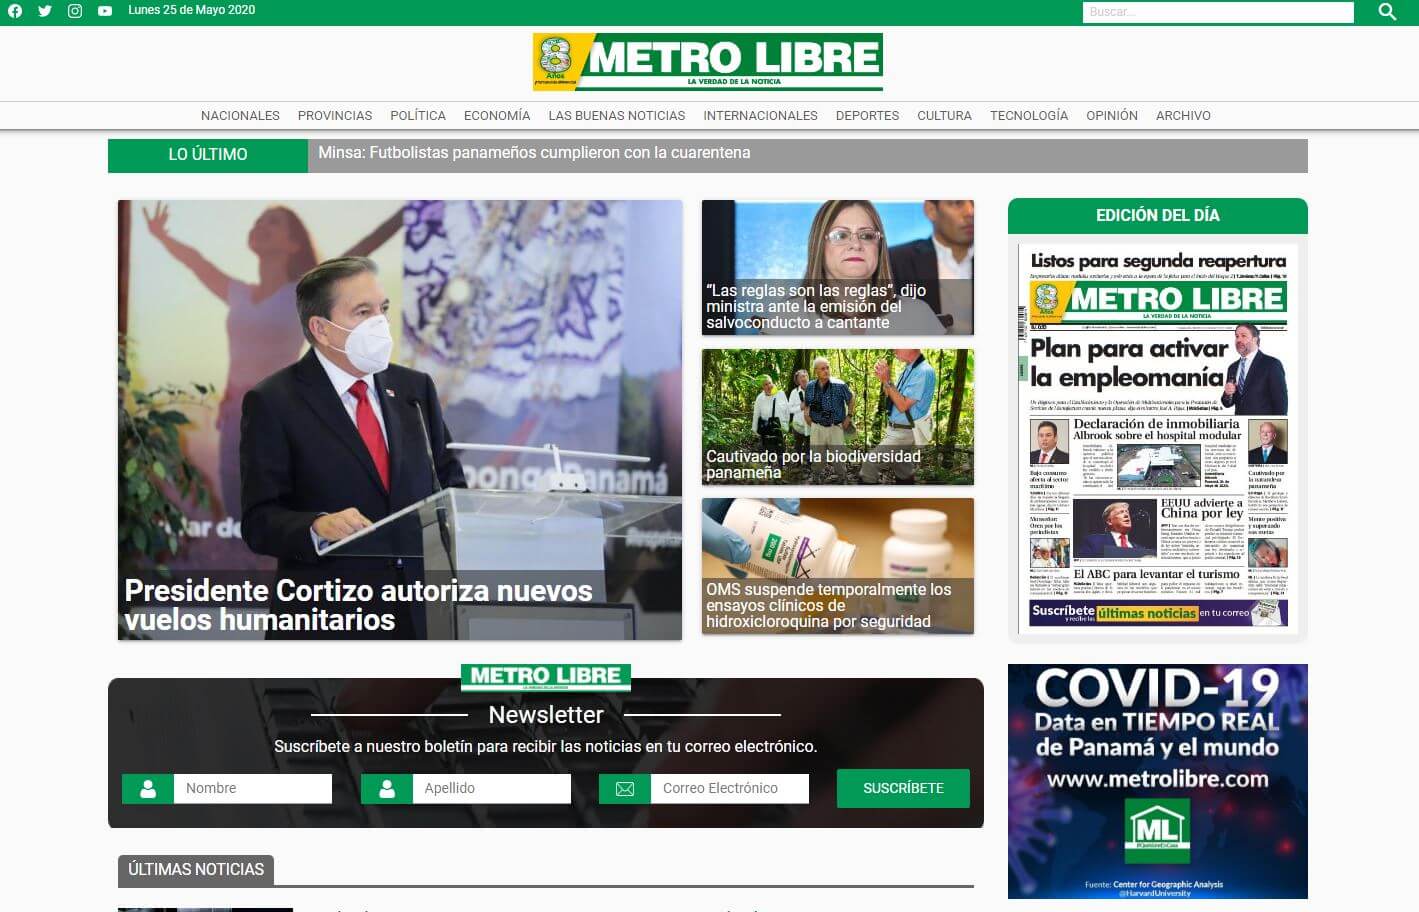 periodicos de panama 08 metro libre website